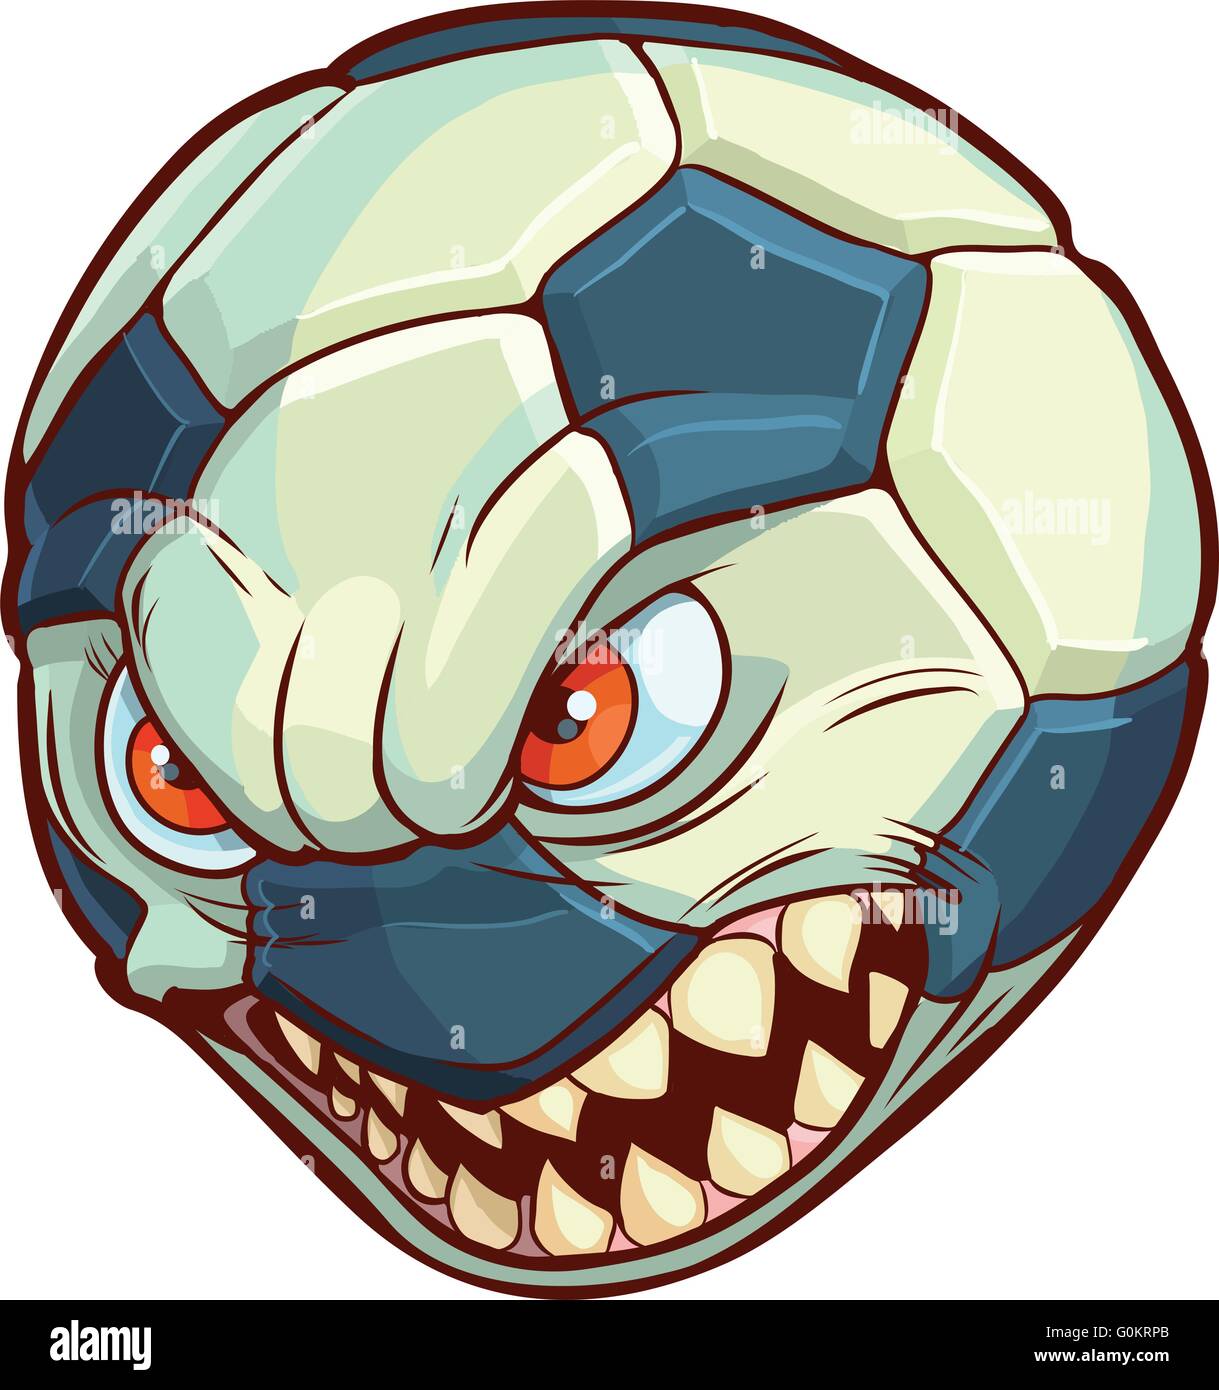 Vector cartoon clip art illustration d'un ballon de soccer ou de football avec un visage avec des yeux rouges et des dents pointues. Illustration de Vecteur